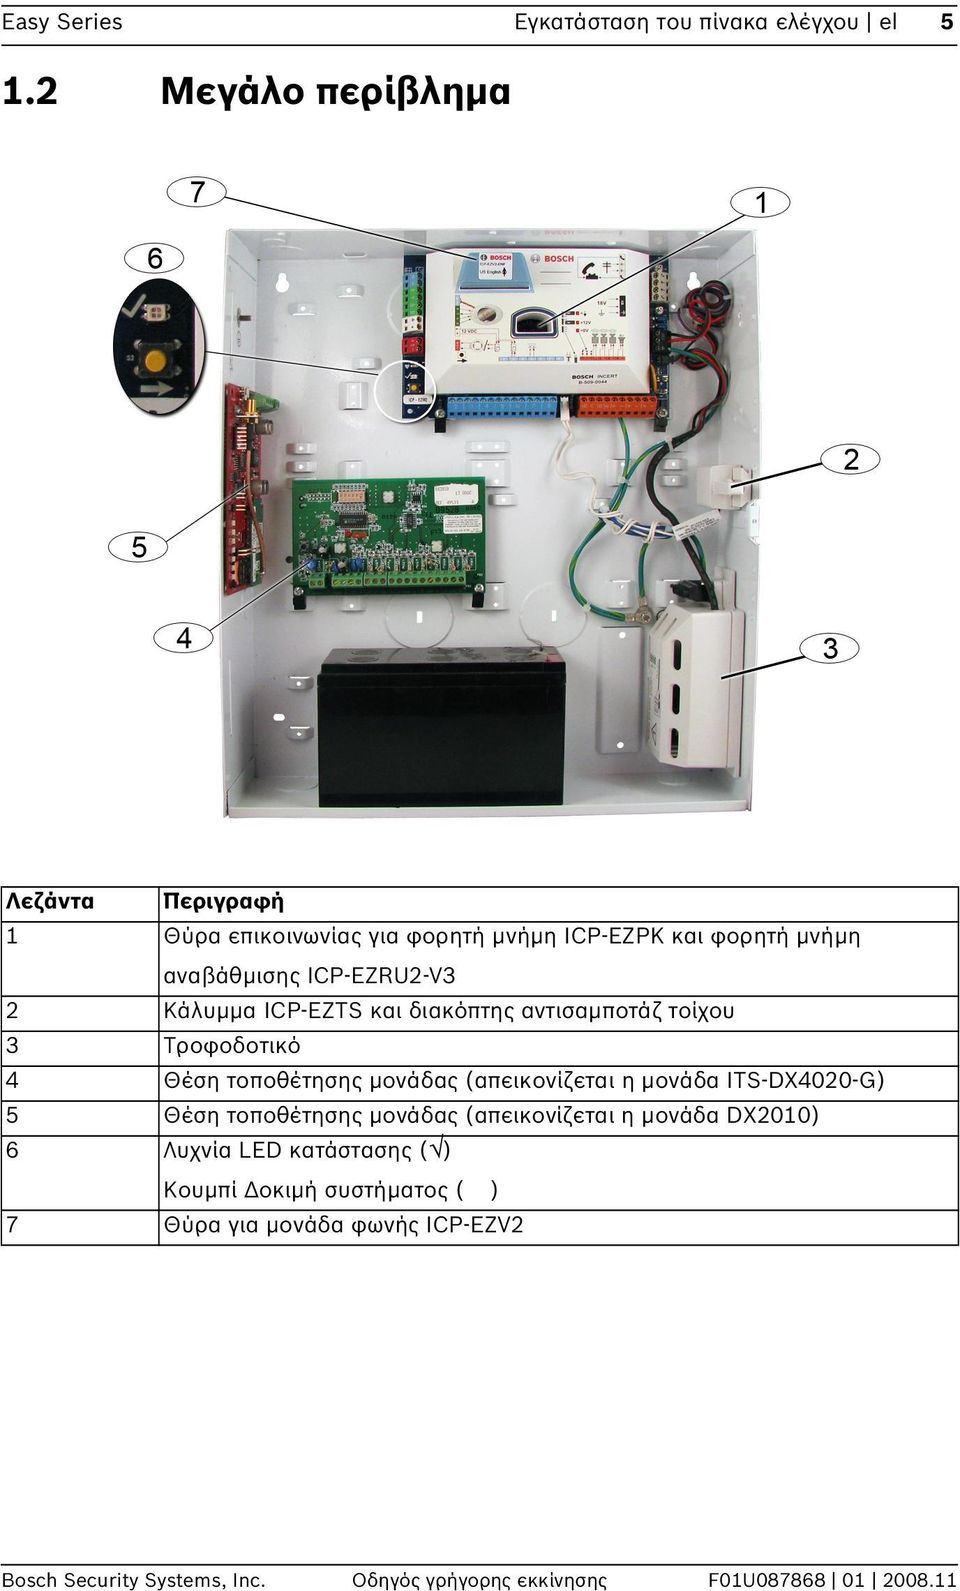 Κάλυμμα ICP-EZTS και διακόπτης αντισαμποτάζ τοίχου 3 Τροφοδοτικό 4 Θέση τοποθέτησης μονάδας (απεικονίζεται η μονάδα ITS-DX4020-G) 5